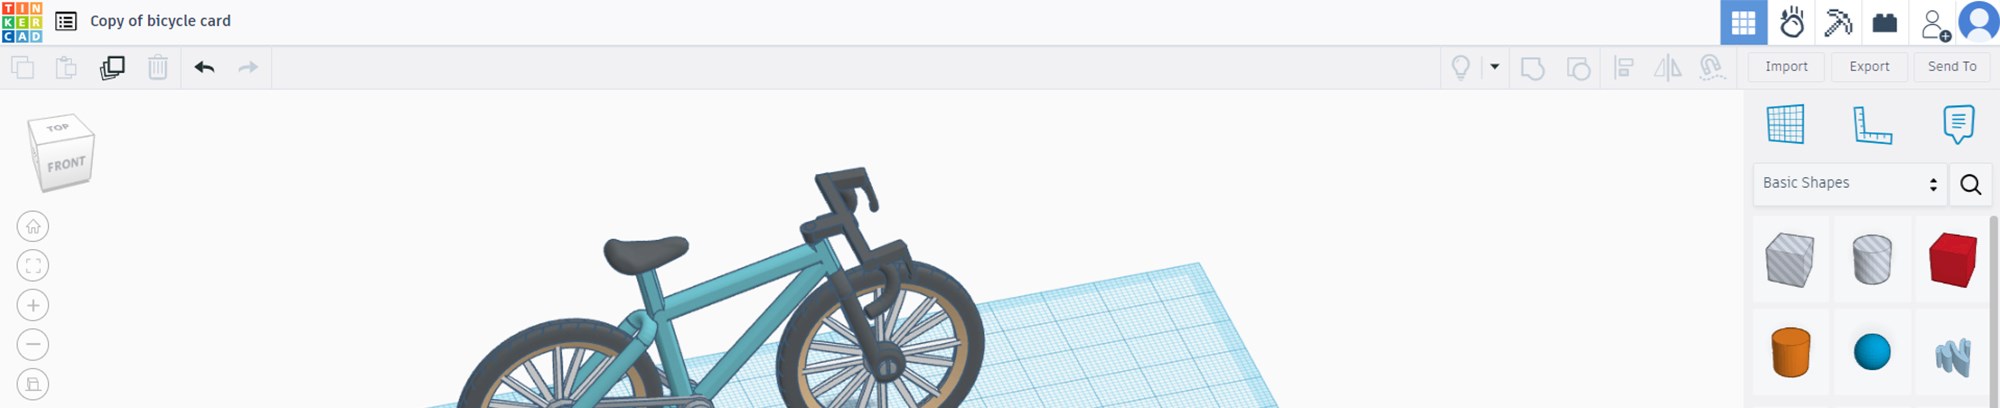 Screenshot af en 3D tegning af en cykel man selv kan samle i 3D programmet TinkerCad